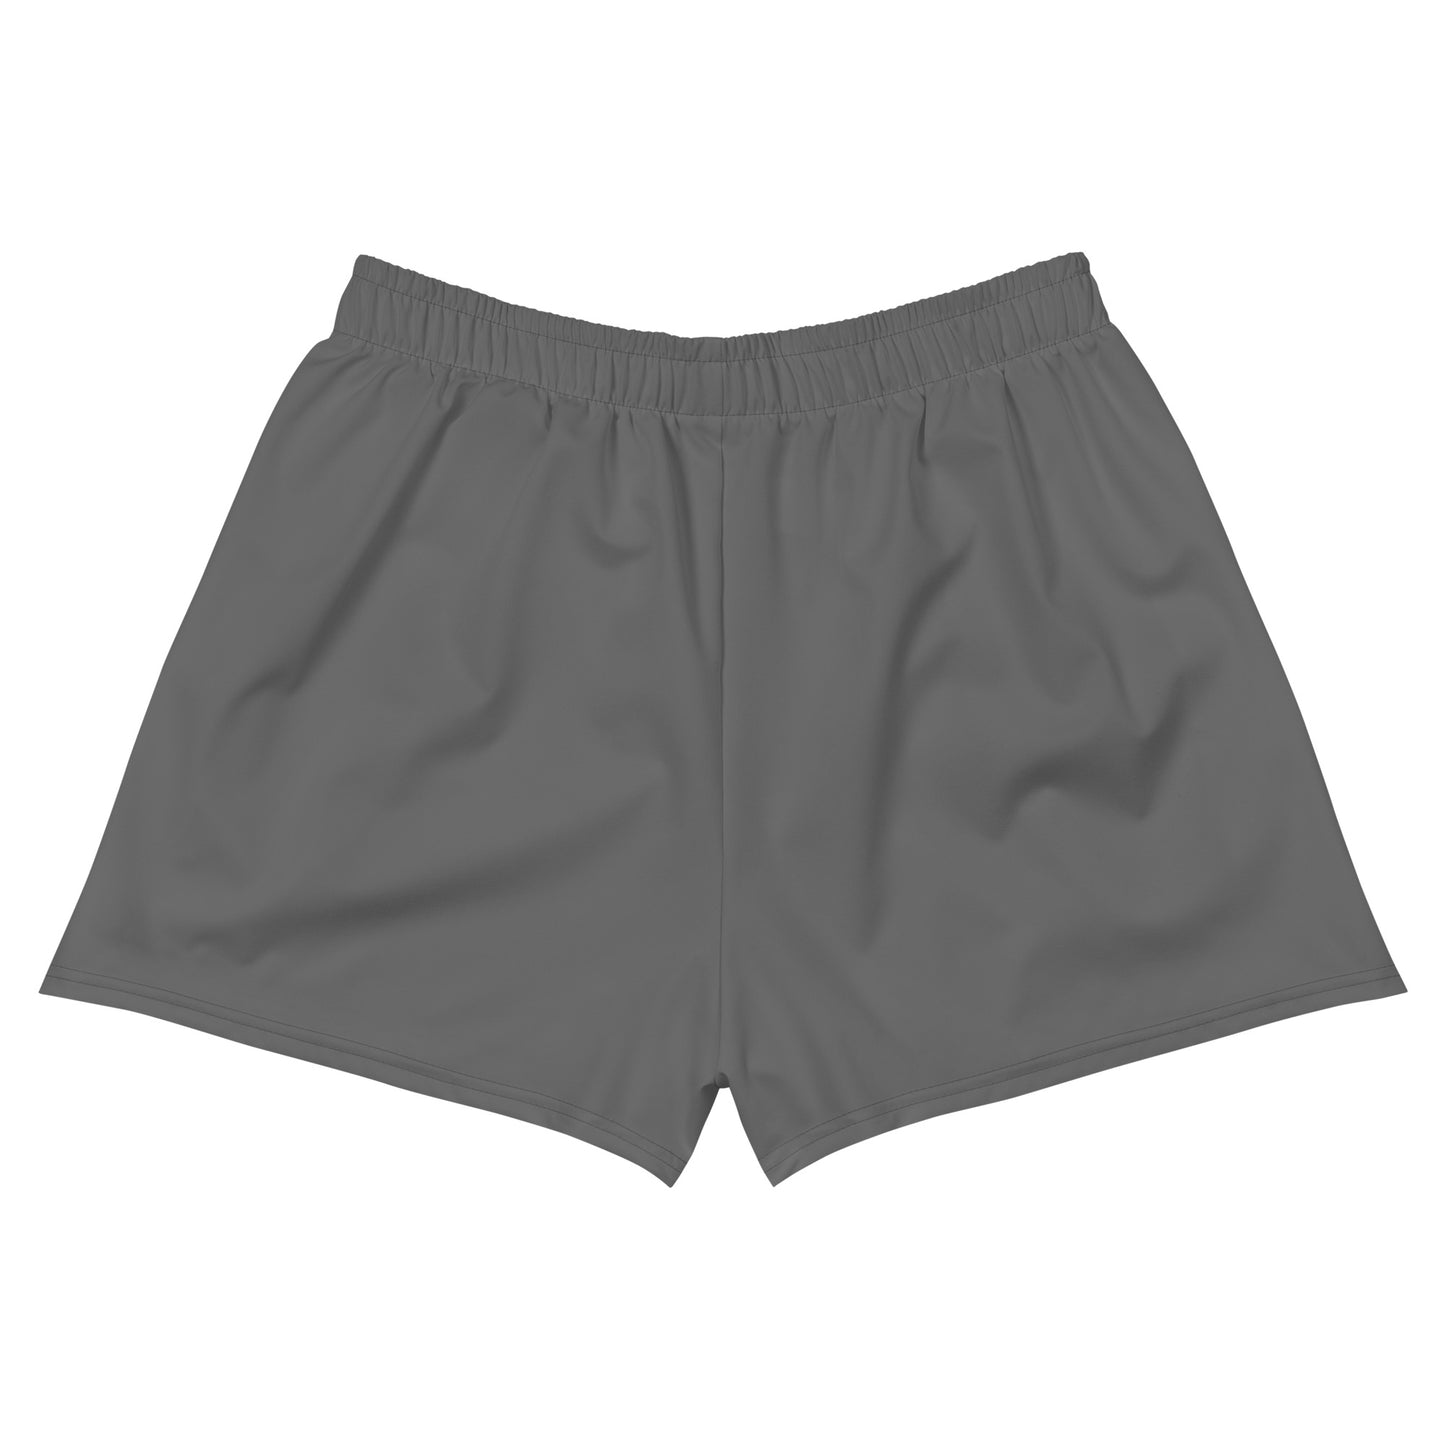 Humble Sportswear, women's eco-friendly shorts, women’s color match shorts, running shorts for women 